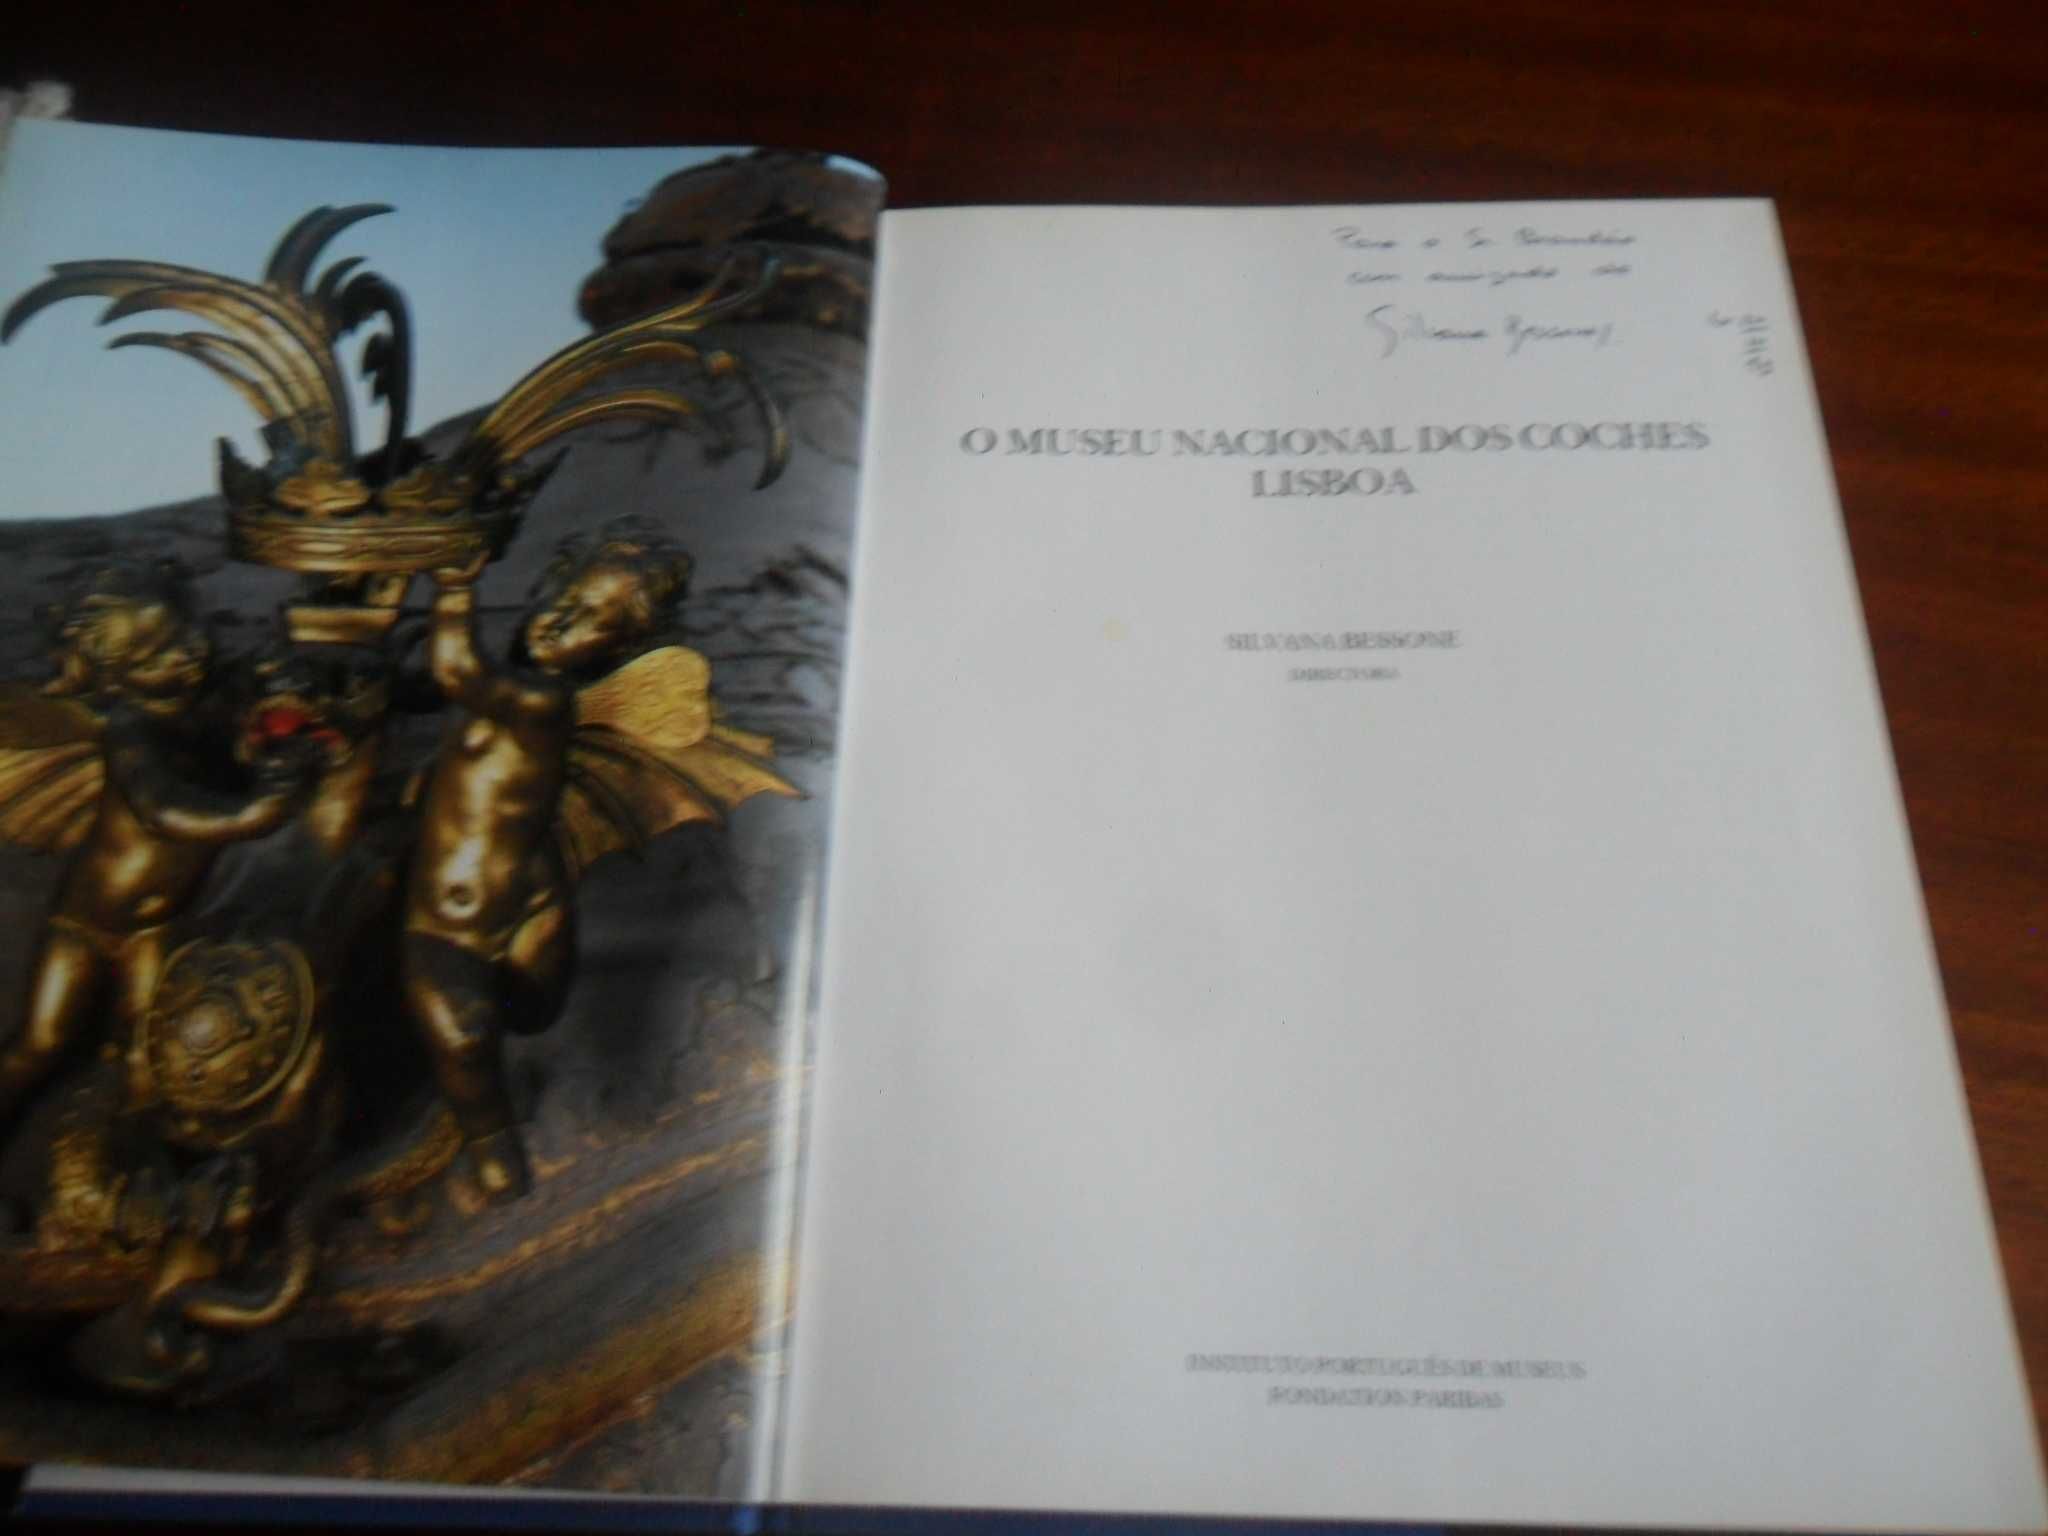 "O Museu Nacional dos Coches - Lisboa" de Silvana Bessone - 1ª Ed 1993